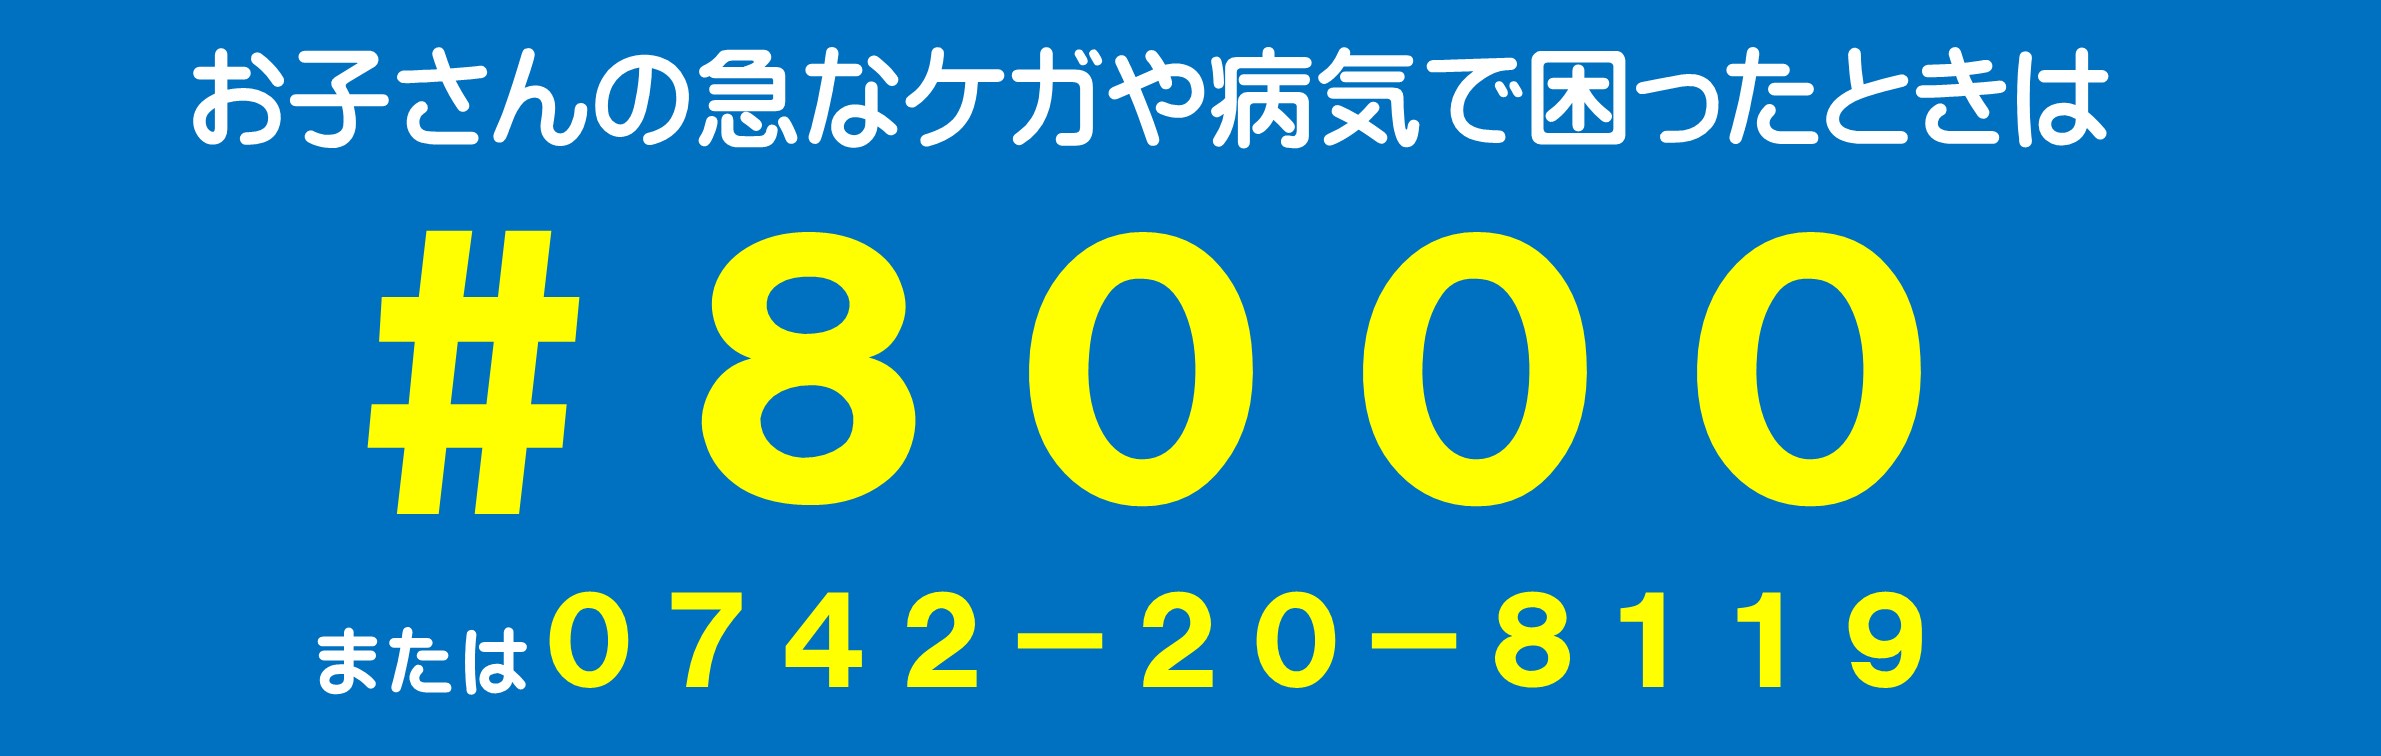 奈良県こども救急電話相談#8000